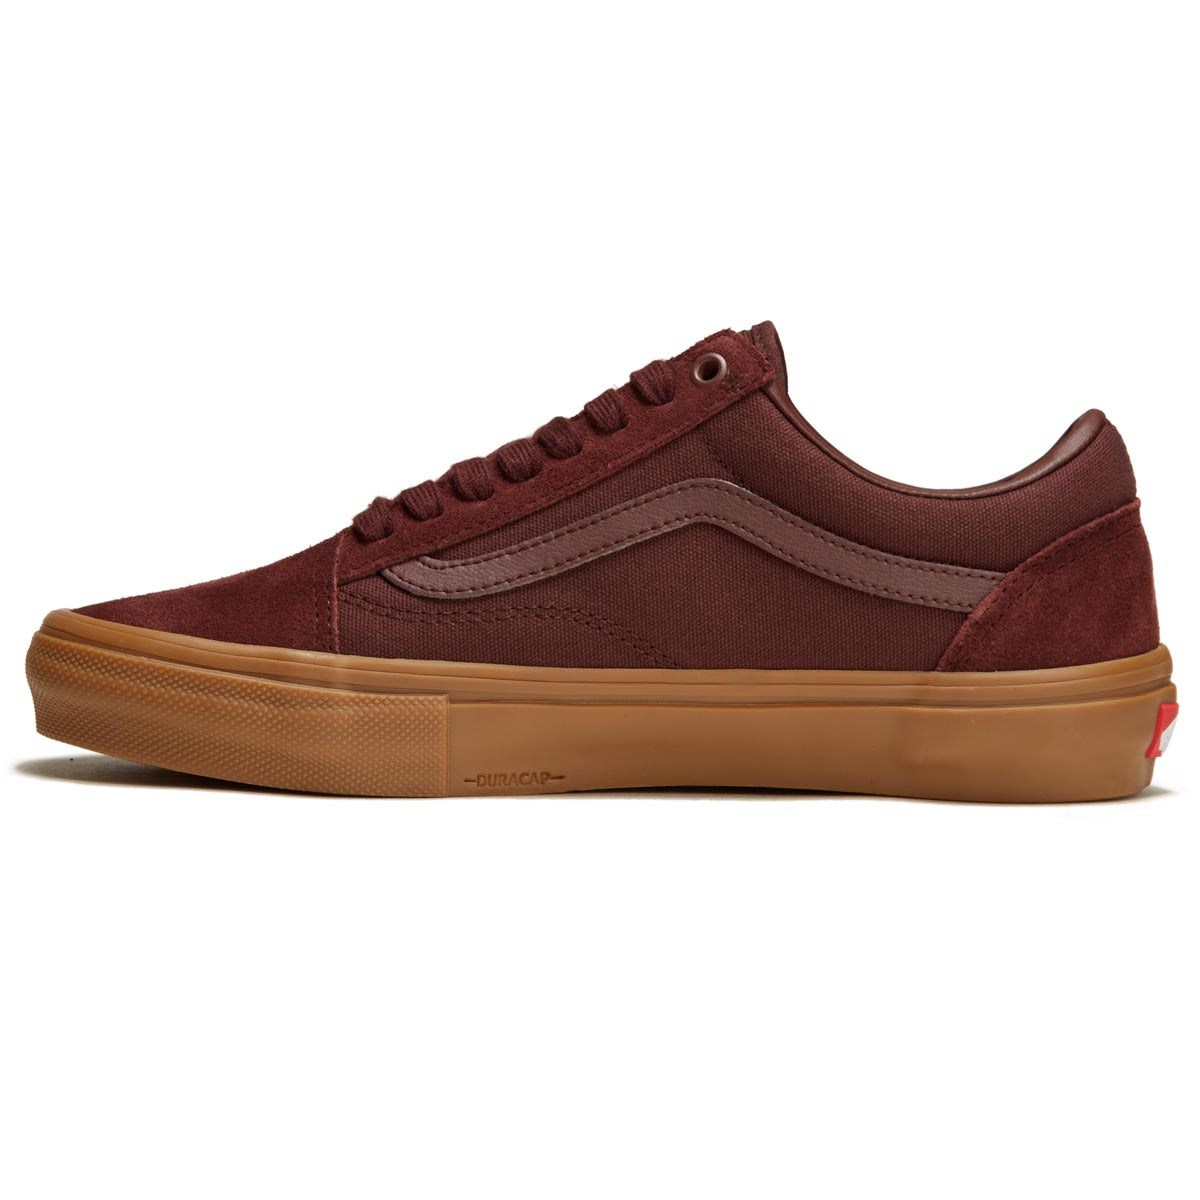 Vans Skate Old Skool Shoes - Dark Red/Gum image 2